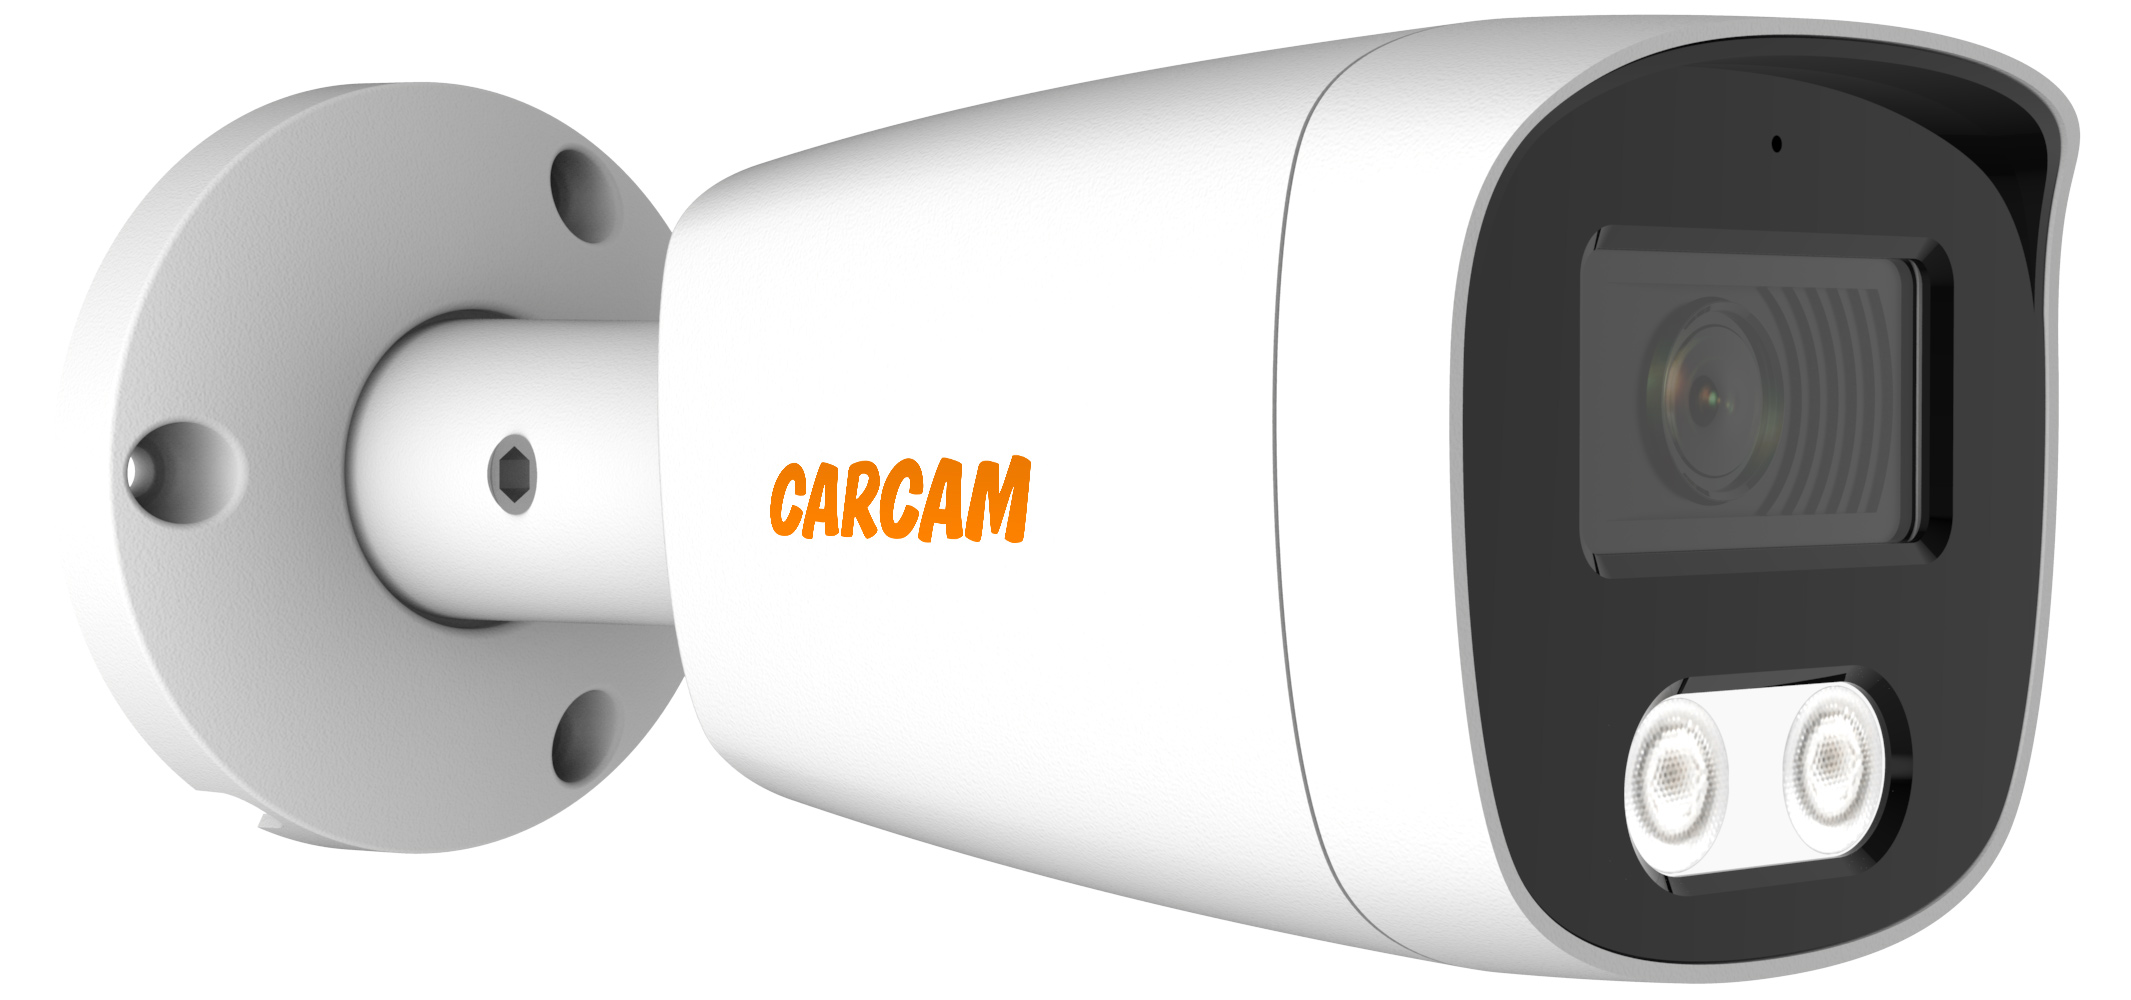 Камера видеонаблюдения CARCAM 8MP Bullet IP Camera 8170SDM камера видеонаблюдения carcam 8mp bullet ip camera 8170sdm